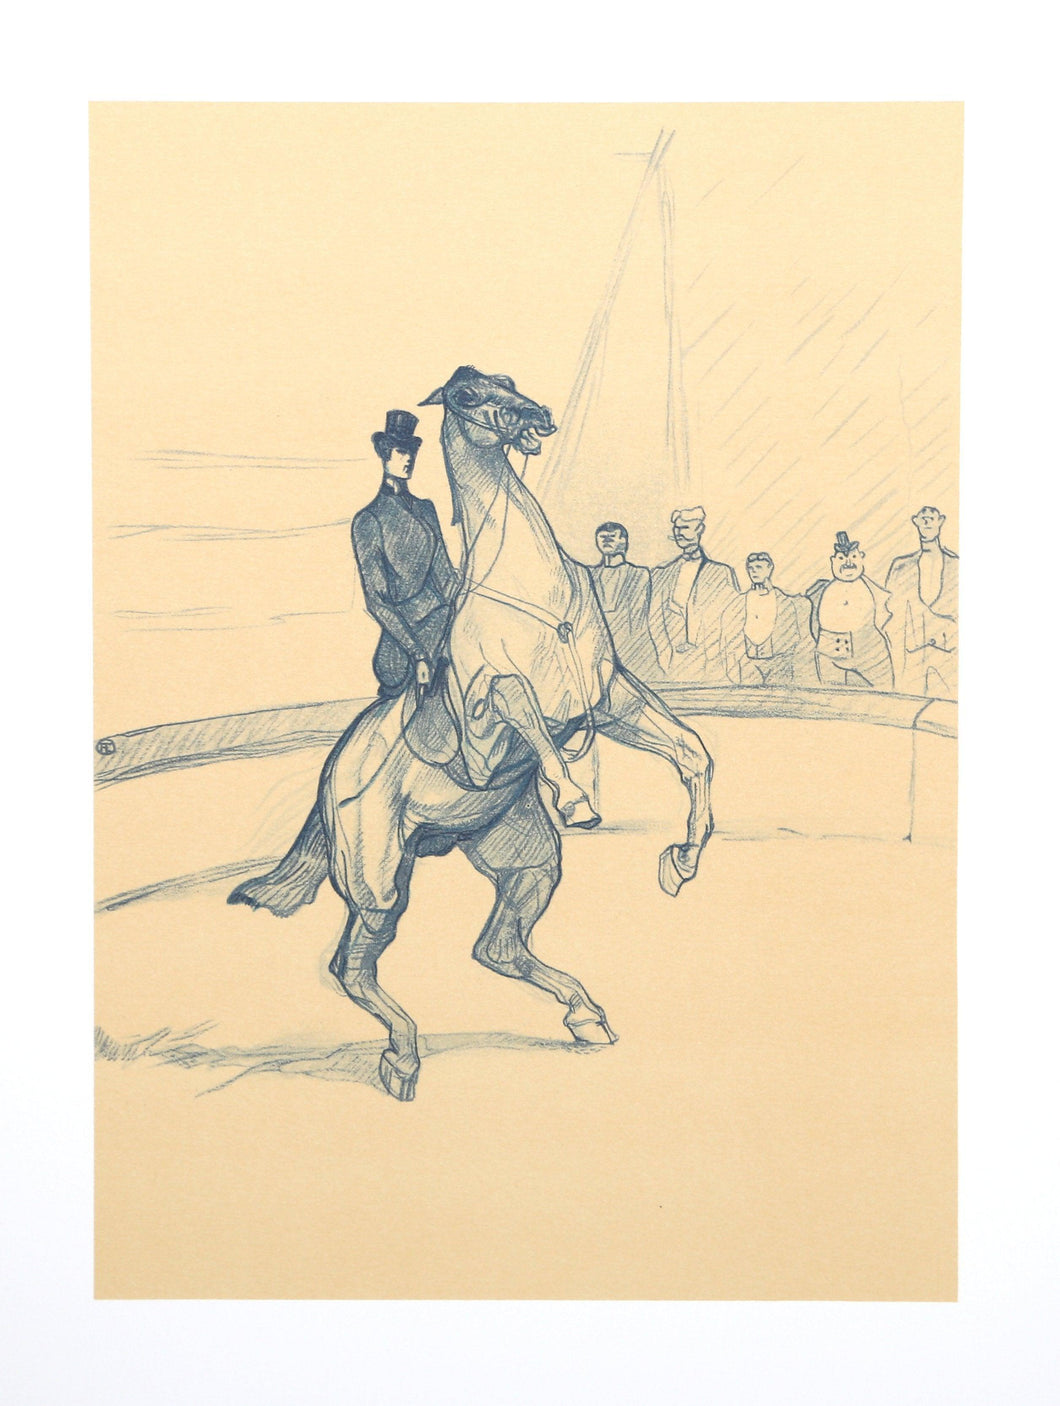 The Circus Portfolio 16 Lithograph | Henri de Toulouse-Lautrec,{{product.type}}